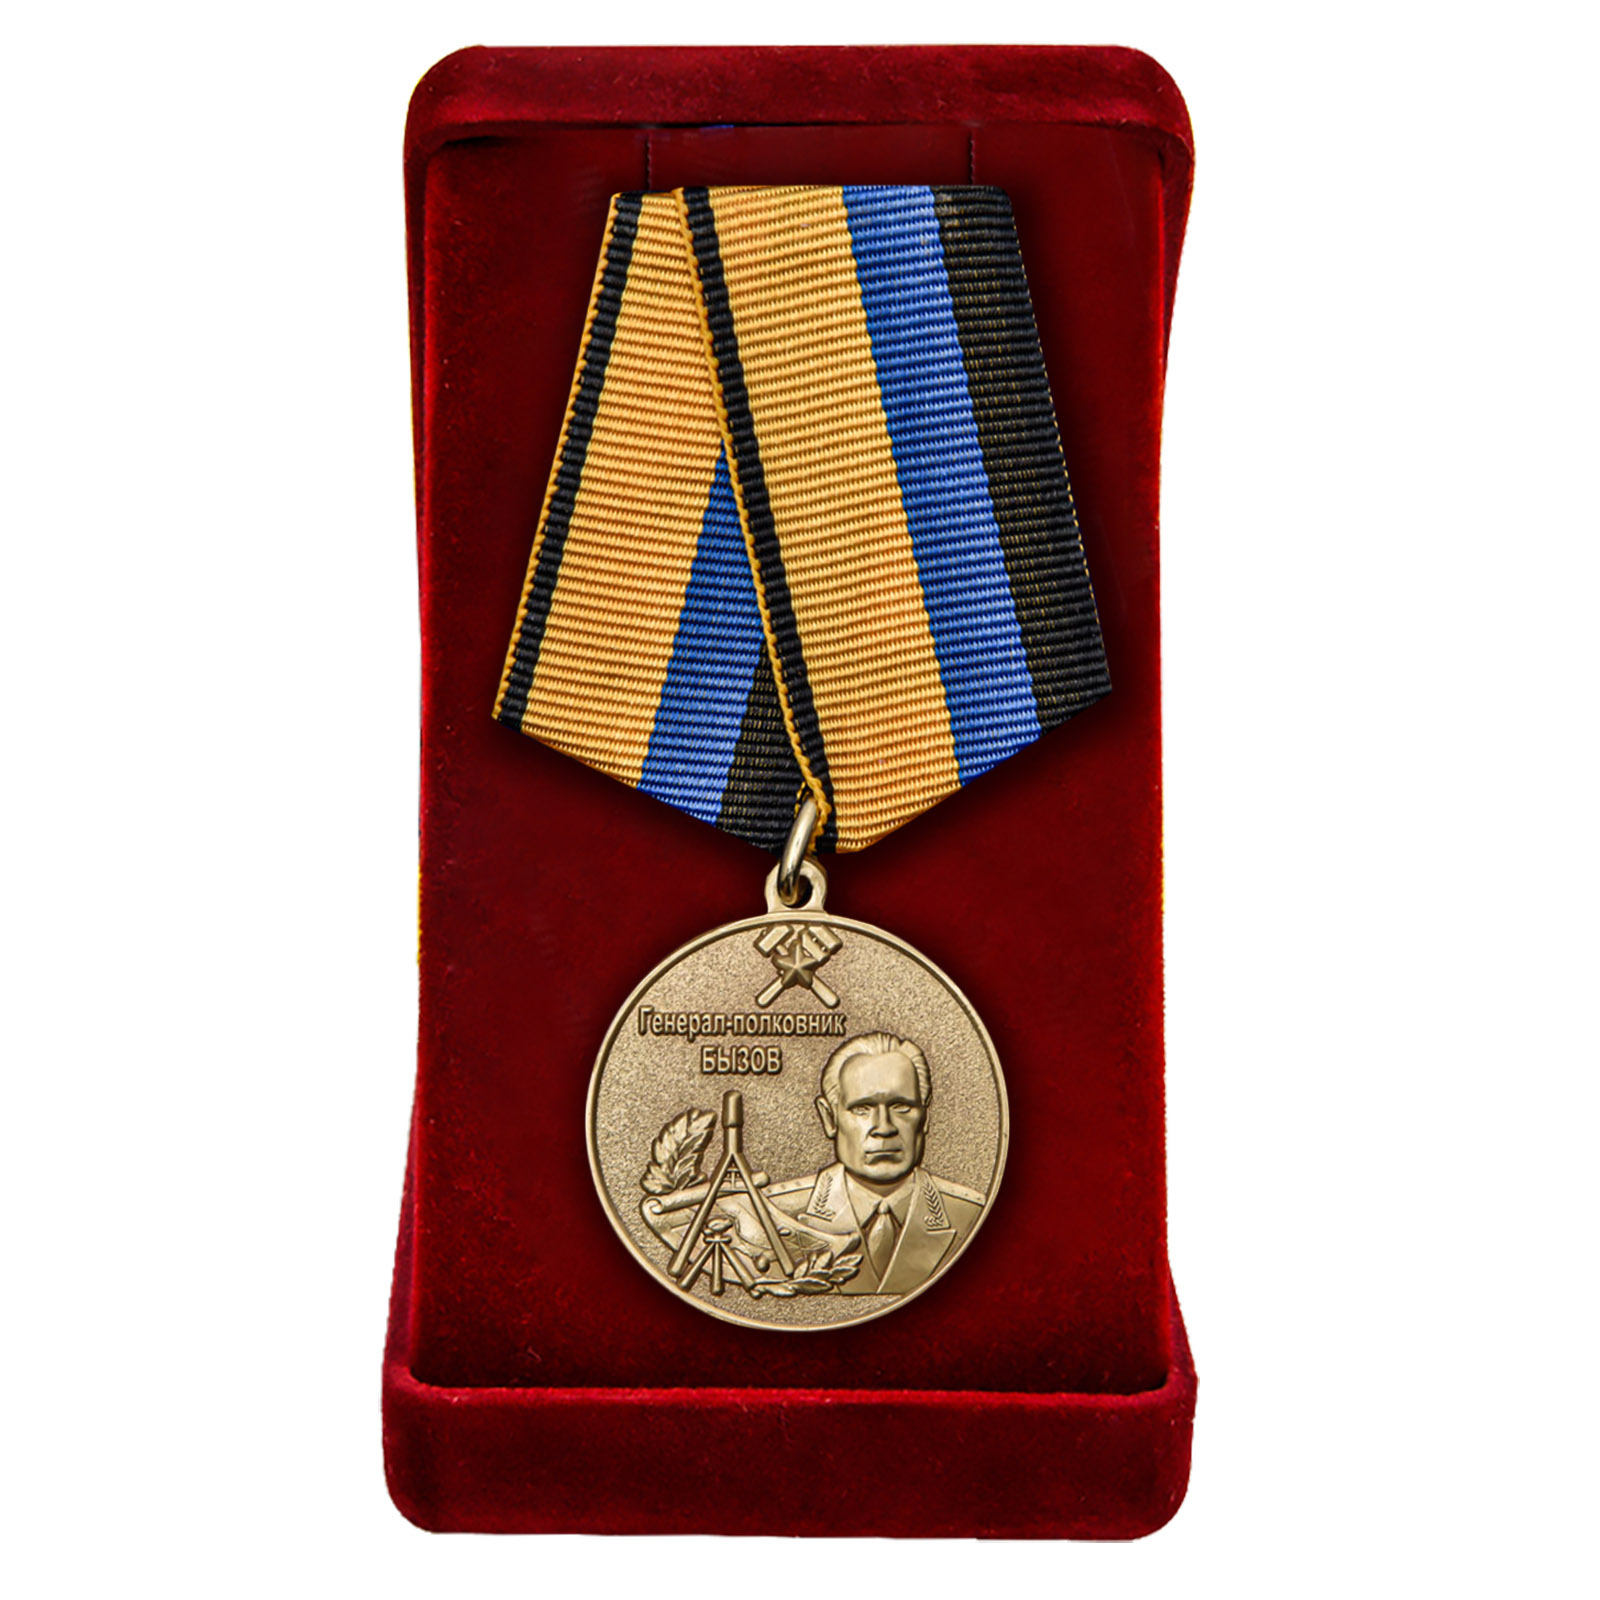 Купить медаль Генерал-полковник Бызов МО РФ в подарок